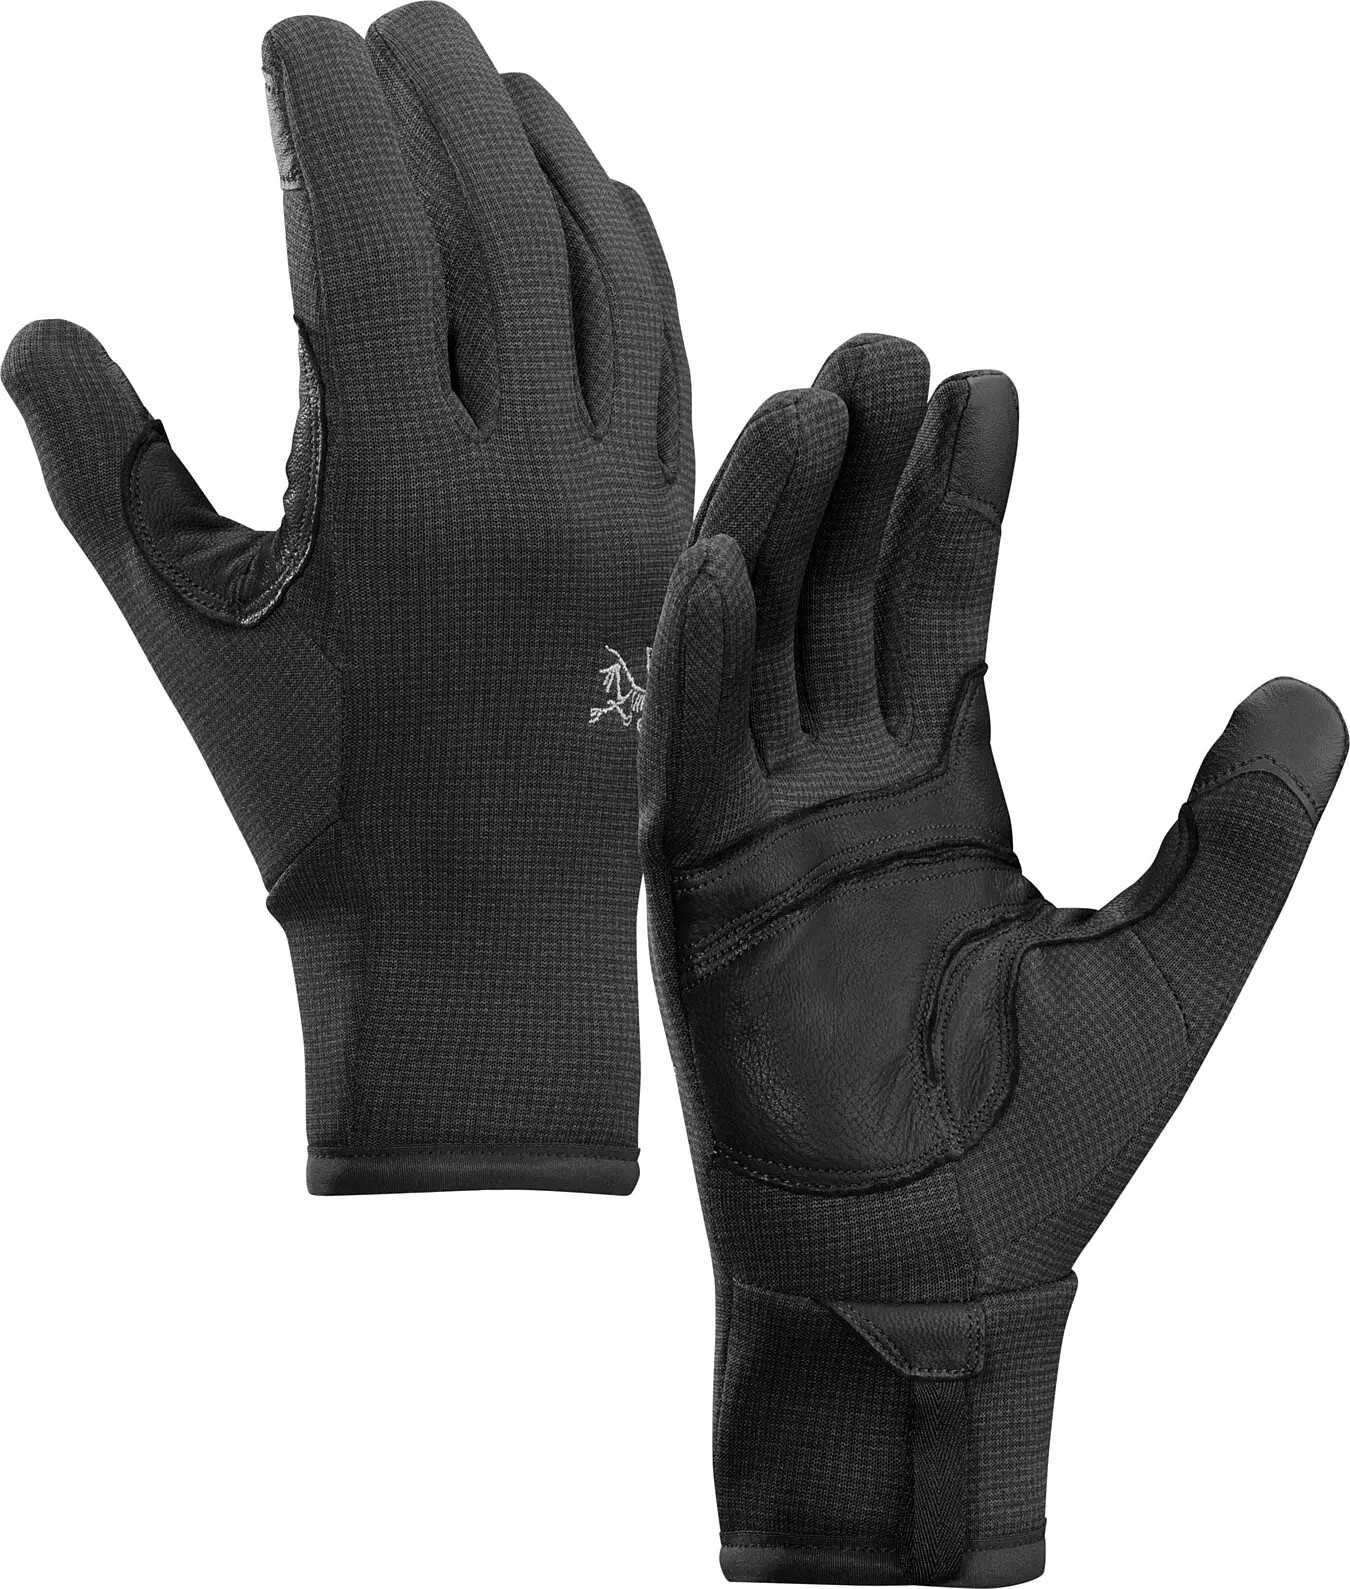 Arcteryx Arc’teryx Unisex Rivet Glove Black